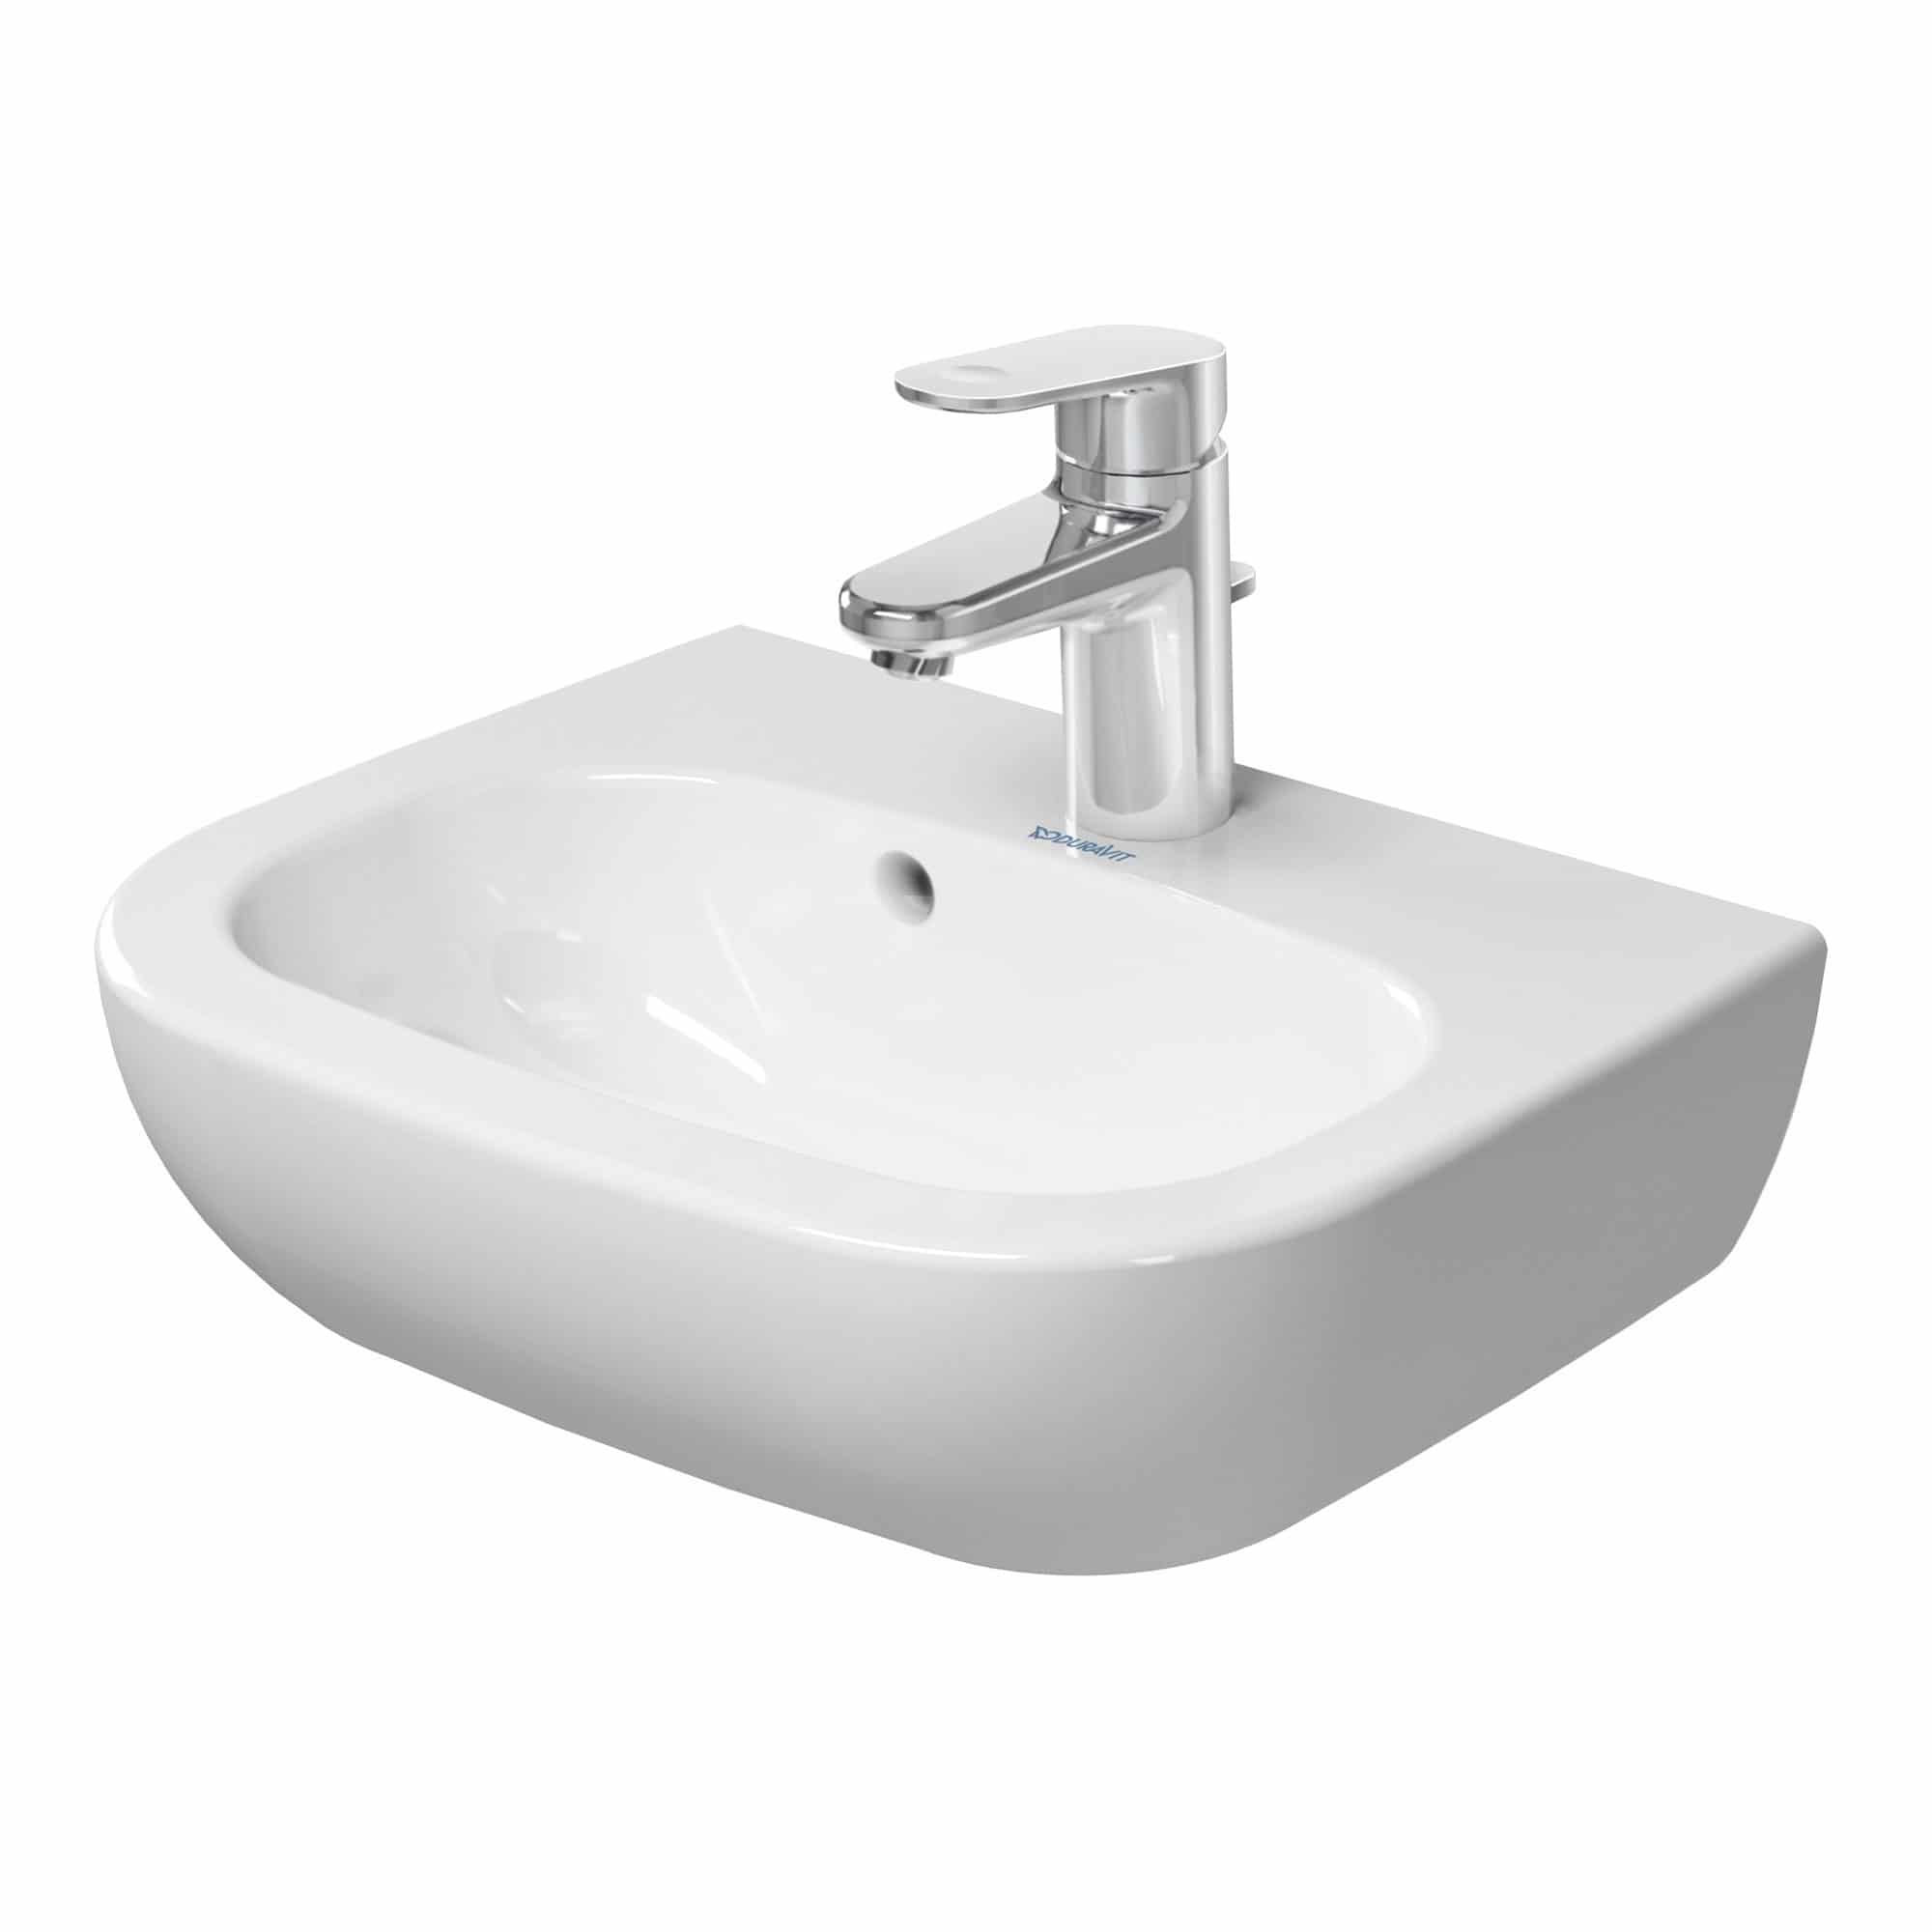 DURAVIT Handwaschbecken D-Code weiß 45 cm - Design by Sieger Design